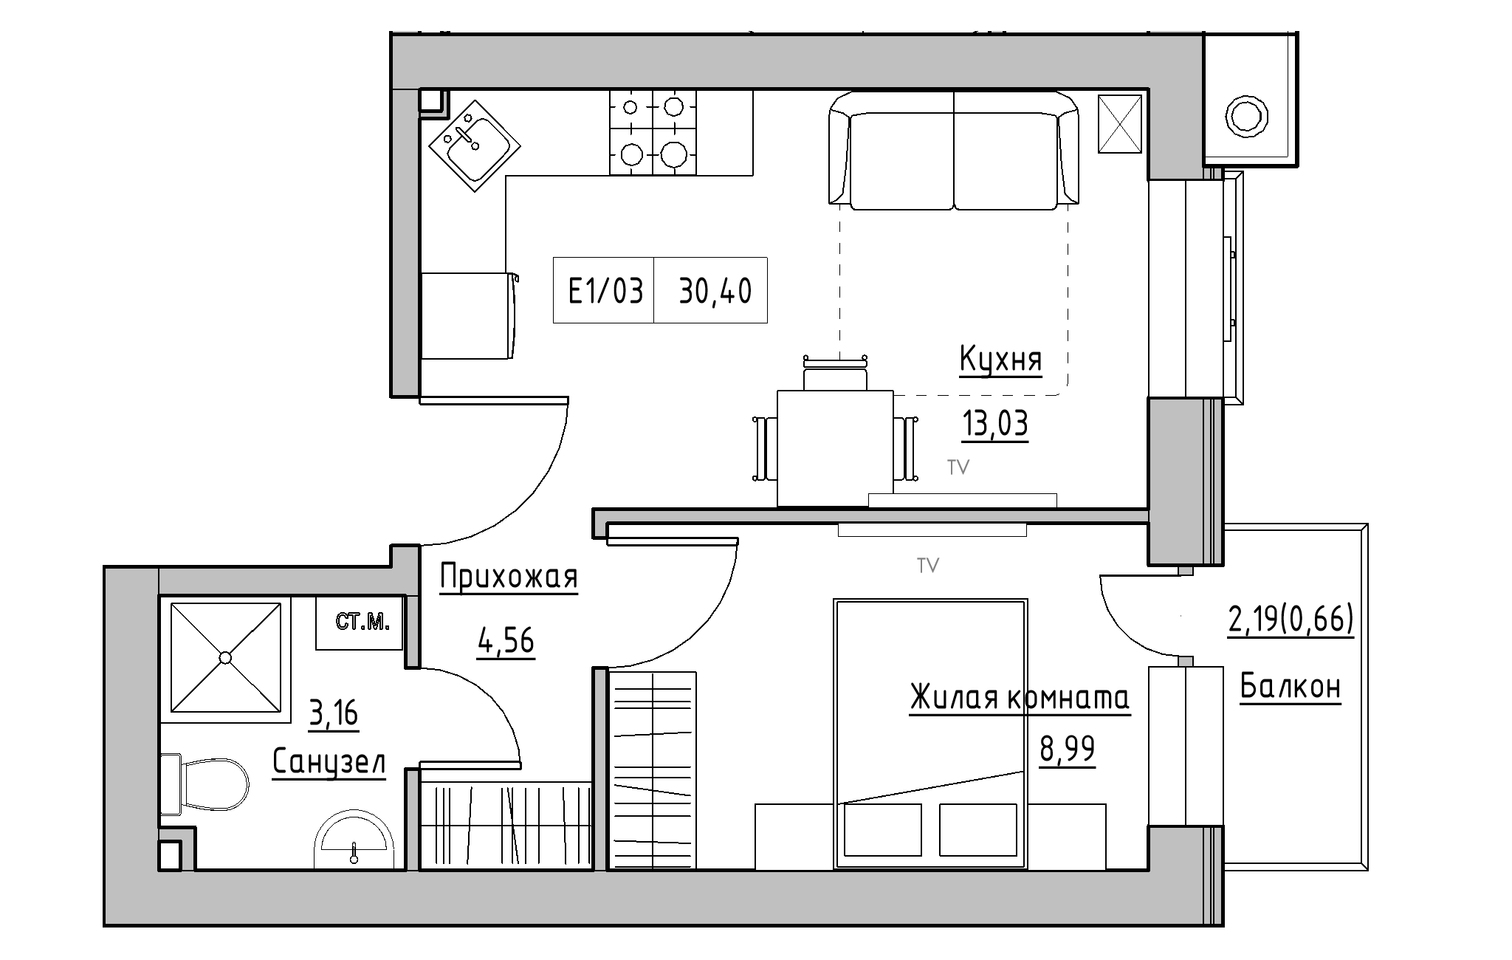 Планування 1-к квартира площею 30.4м2, KS-013-05/0002.